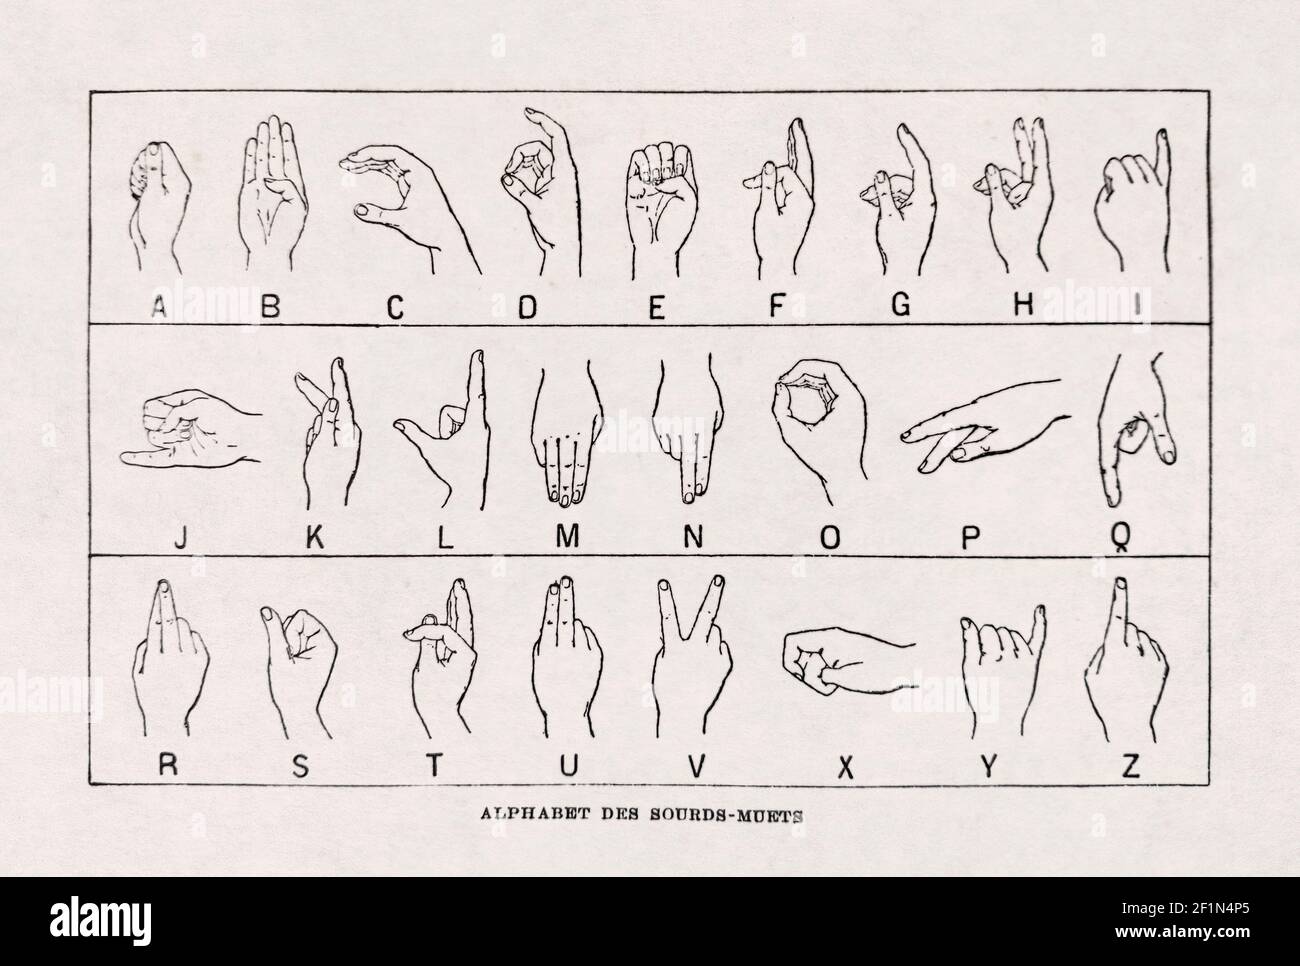 Vecchia illustrazione sulla lingua francese dei segni. Stampato nel dizionario 'Dictionnaire complet illustré' dall'editore Larousse nel 1889. Foto Stock